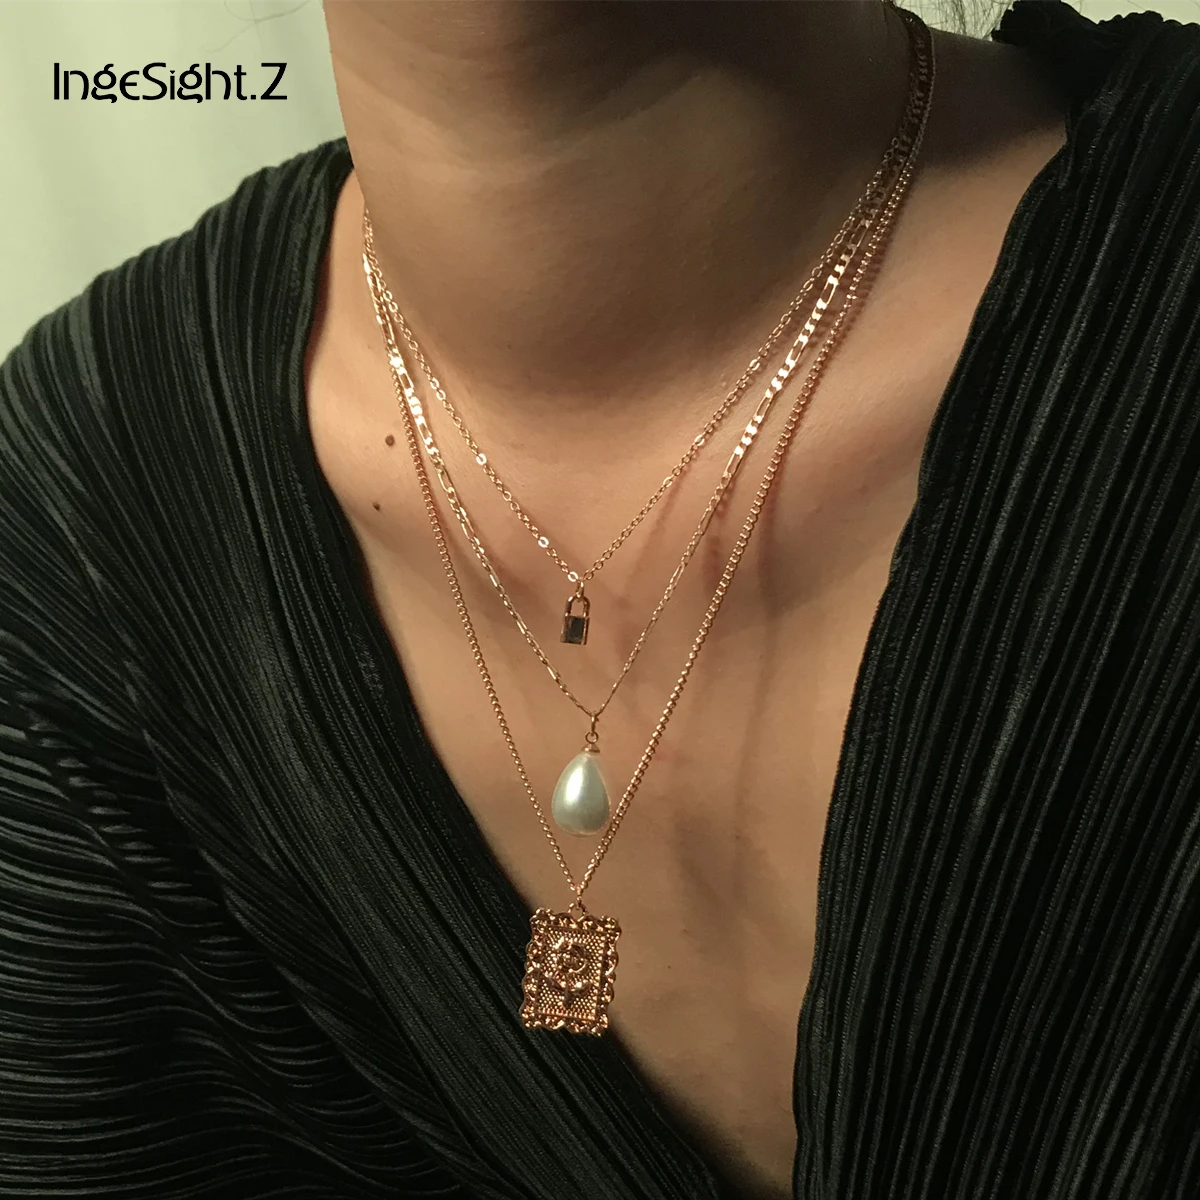 IngeSight. Z панк многослойное ожерелье-чокер с искусственным жемчугом массивное квадратное ожерелье с подвеской в виде цветка розы женские ювелирные изделия